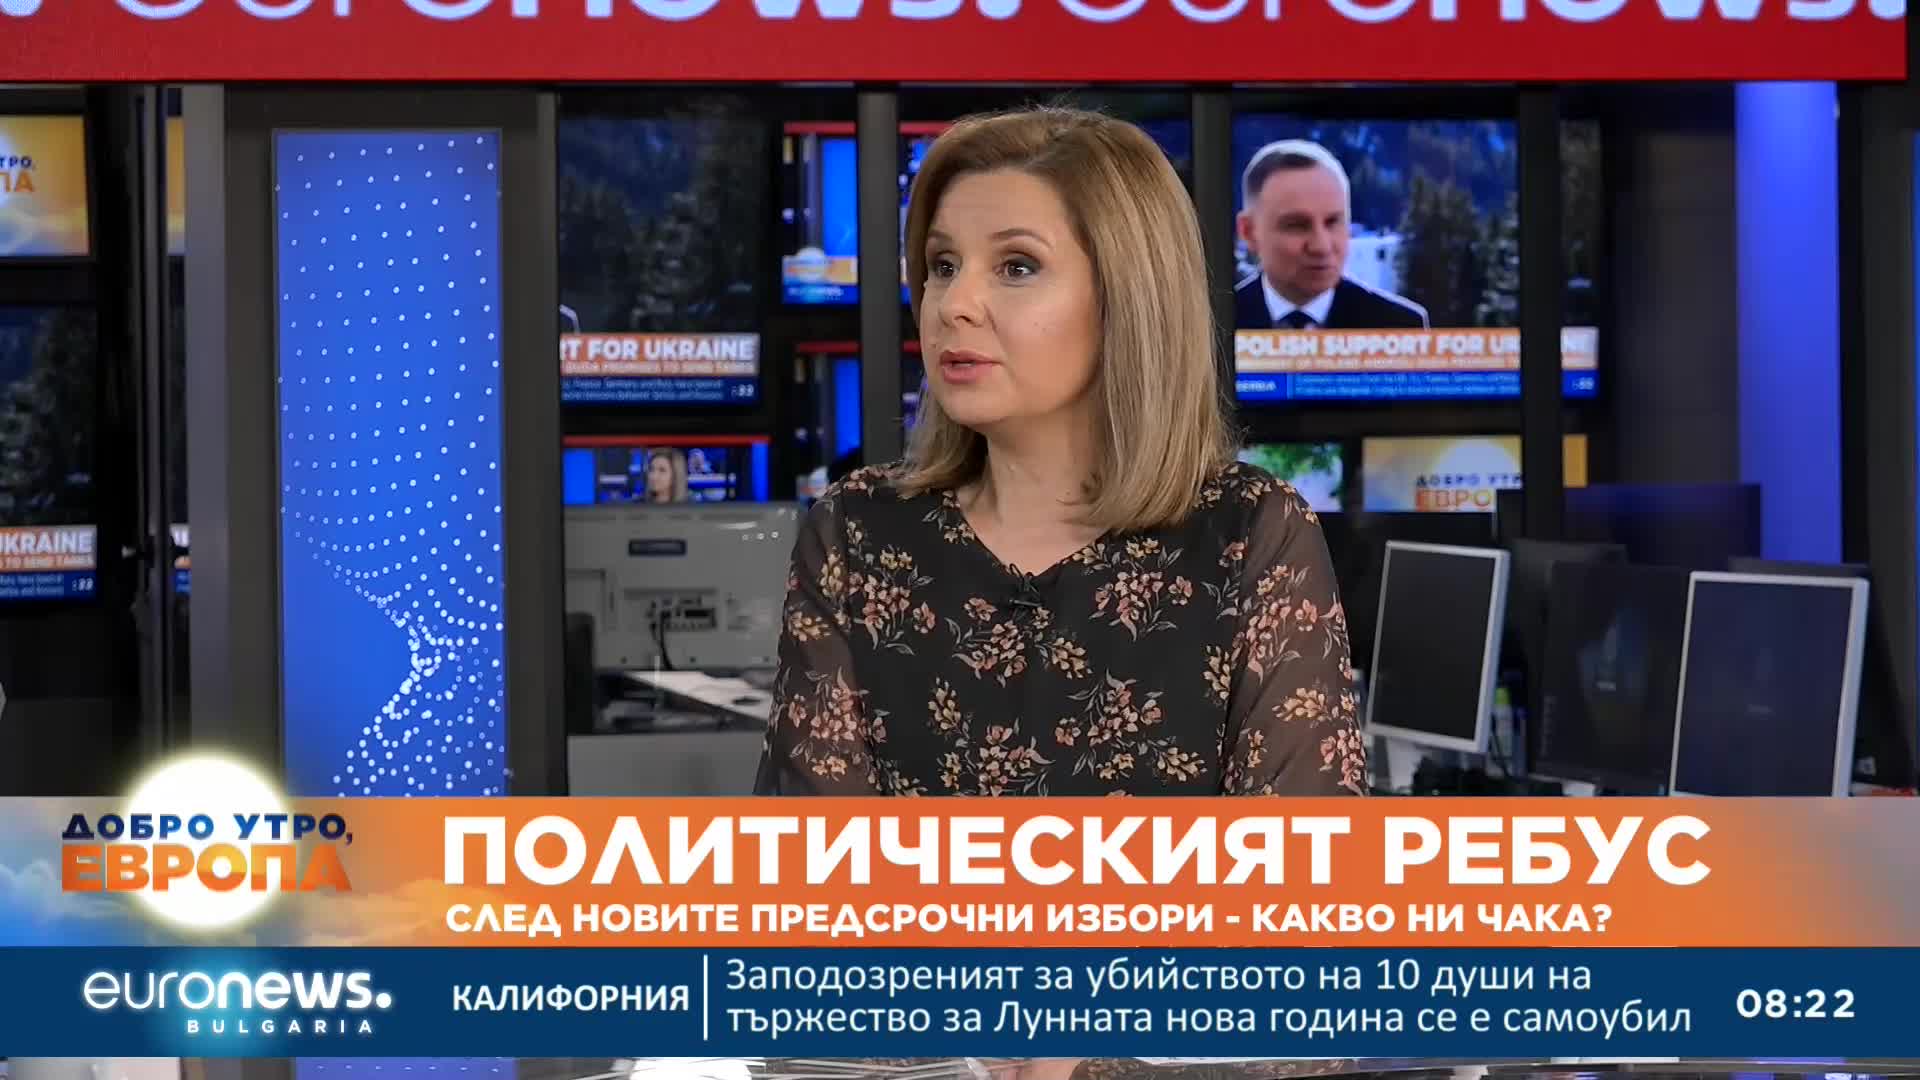 Ружа Райчева: Кабинет ще има, президентската република диша във врата на партиите.